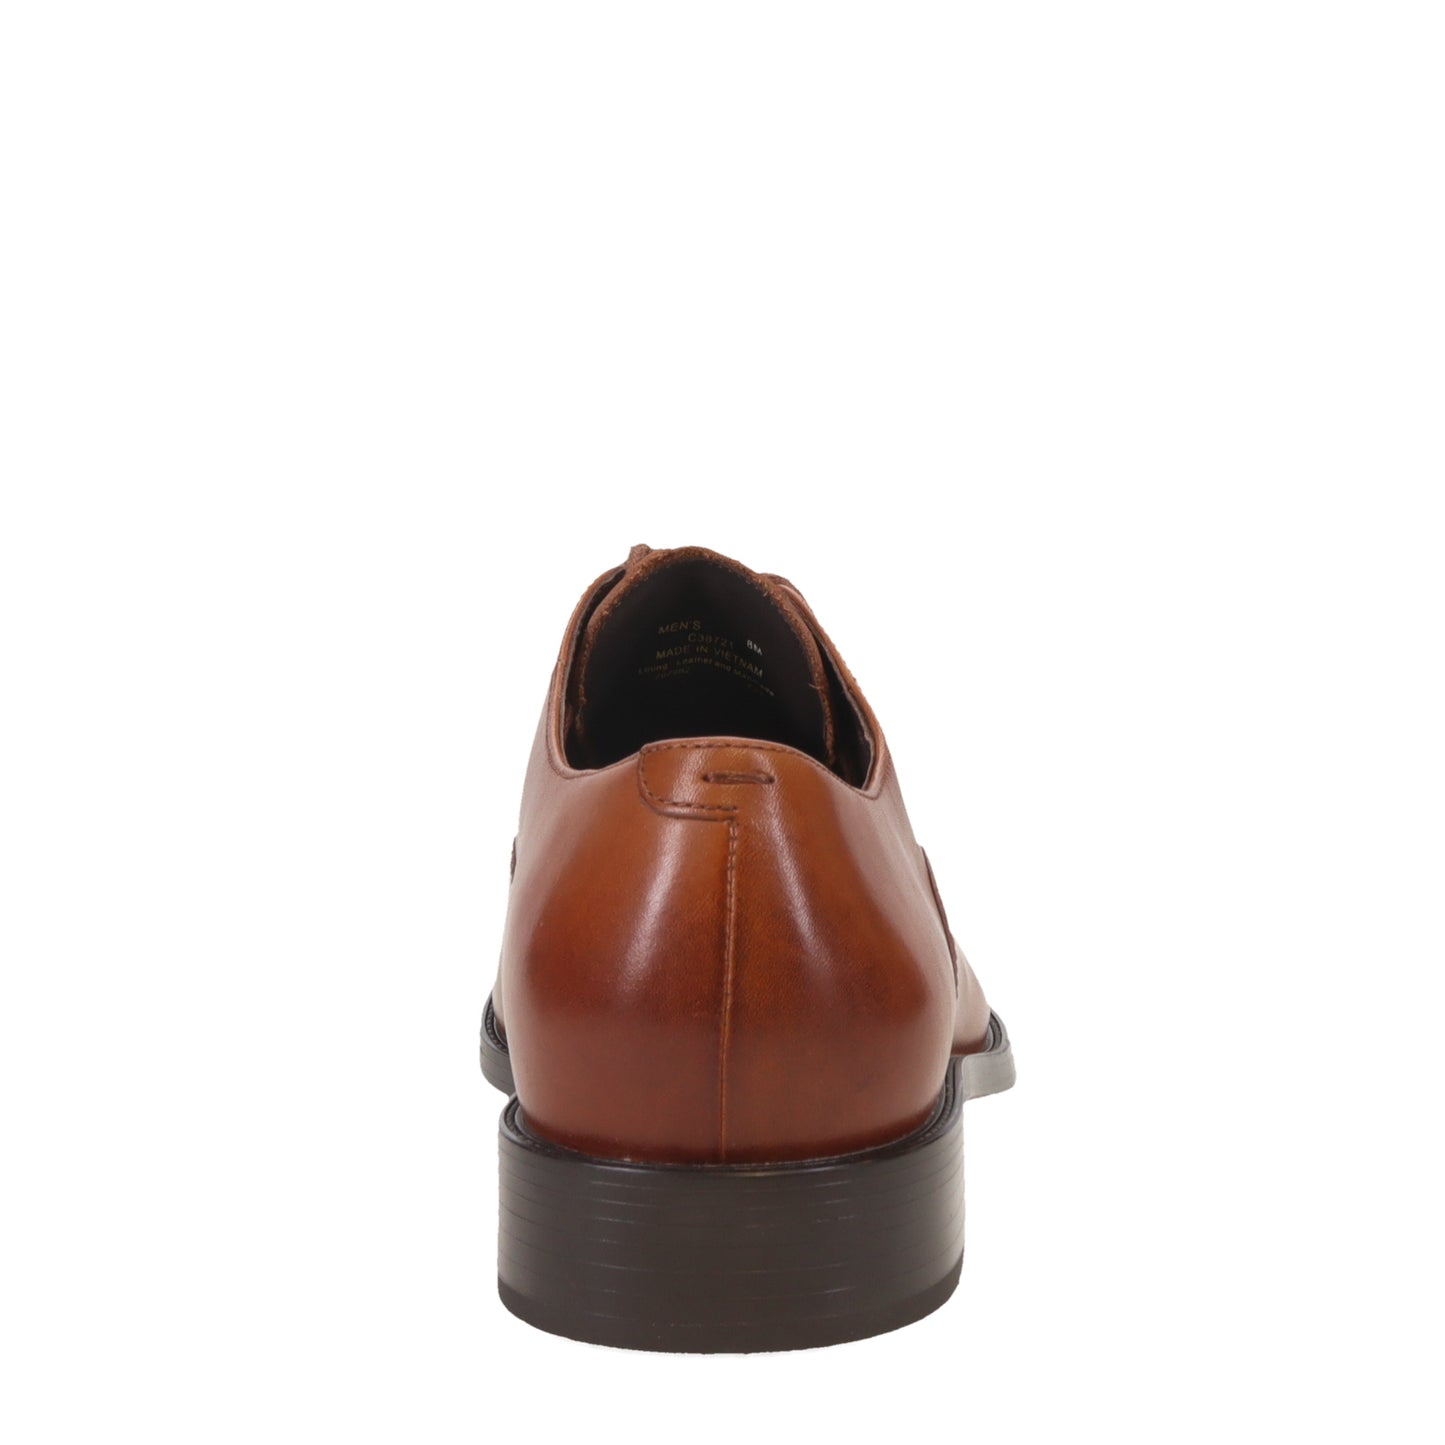 Peltz Shoes  Men's Cole Haan Hawthorne Cap Toe Oxford British Tan C38721